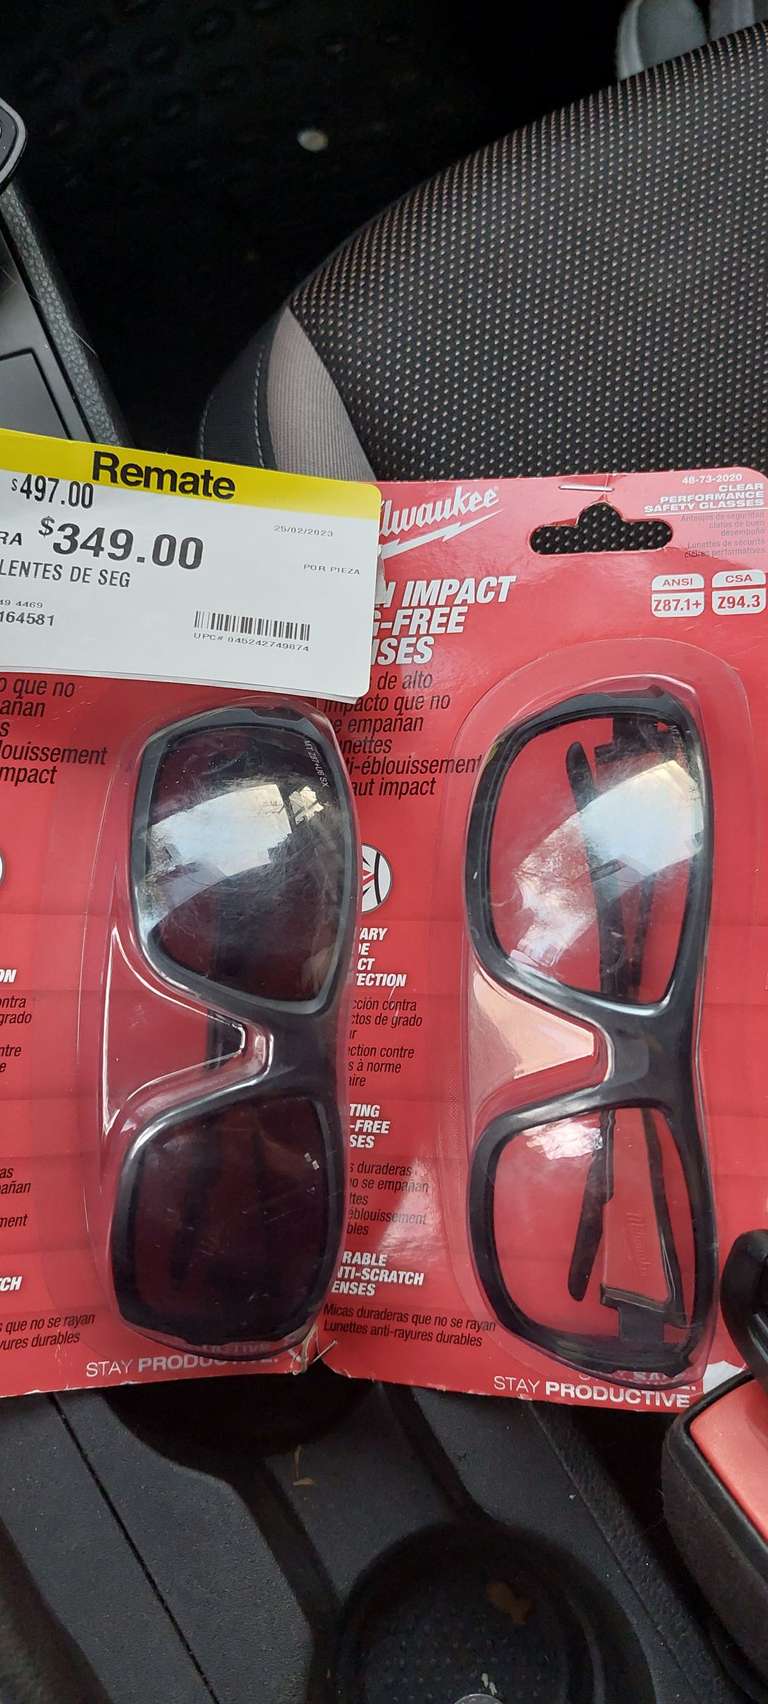 Home Depot: $350 2 lentes de seguridad marca milwaukee tienda física miramontes